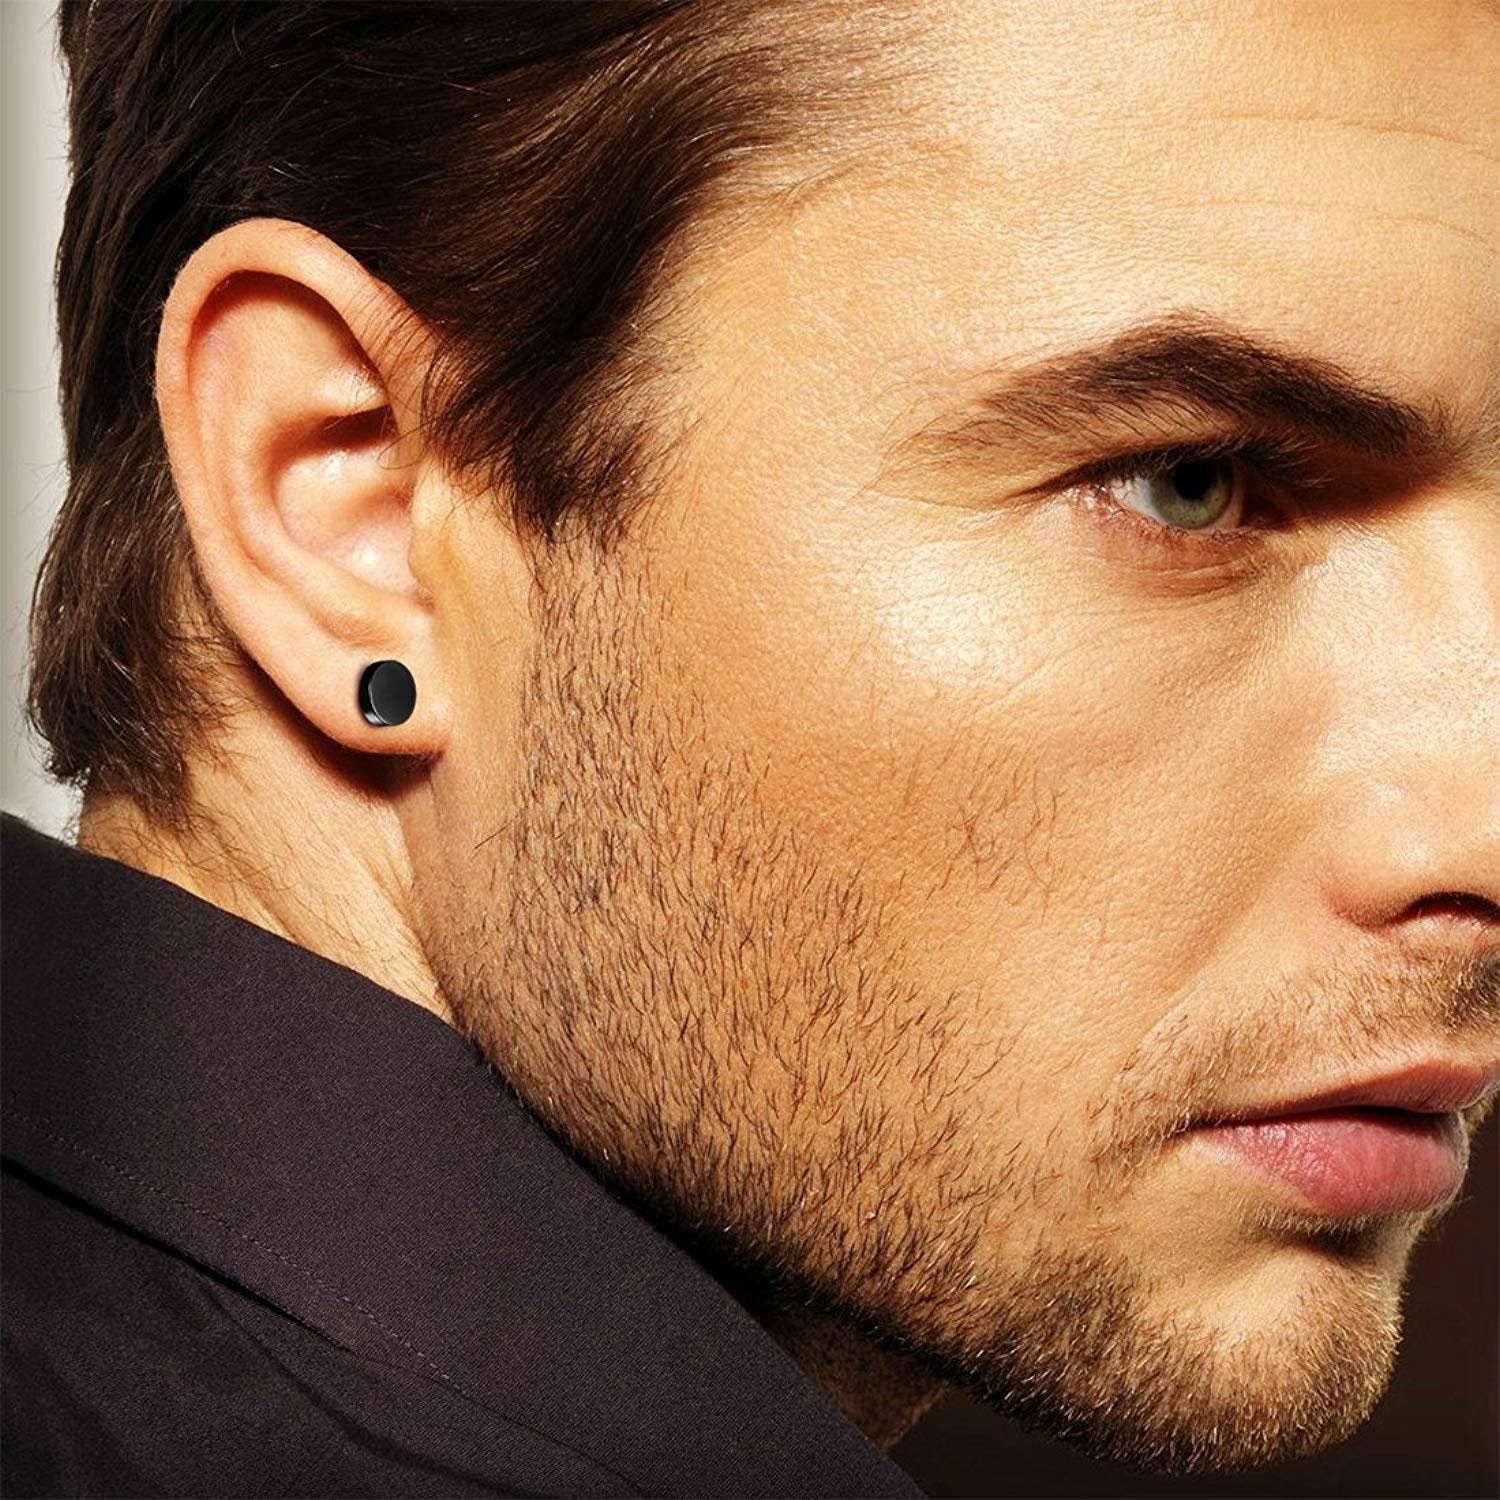 Men Women Stainless Steel Stud Earrings Magnetic Ear Plugs Non-Piercing  Clip On | eBay